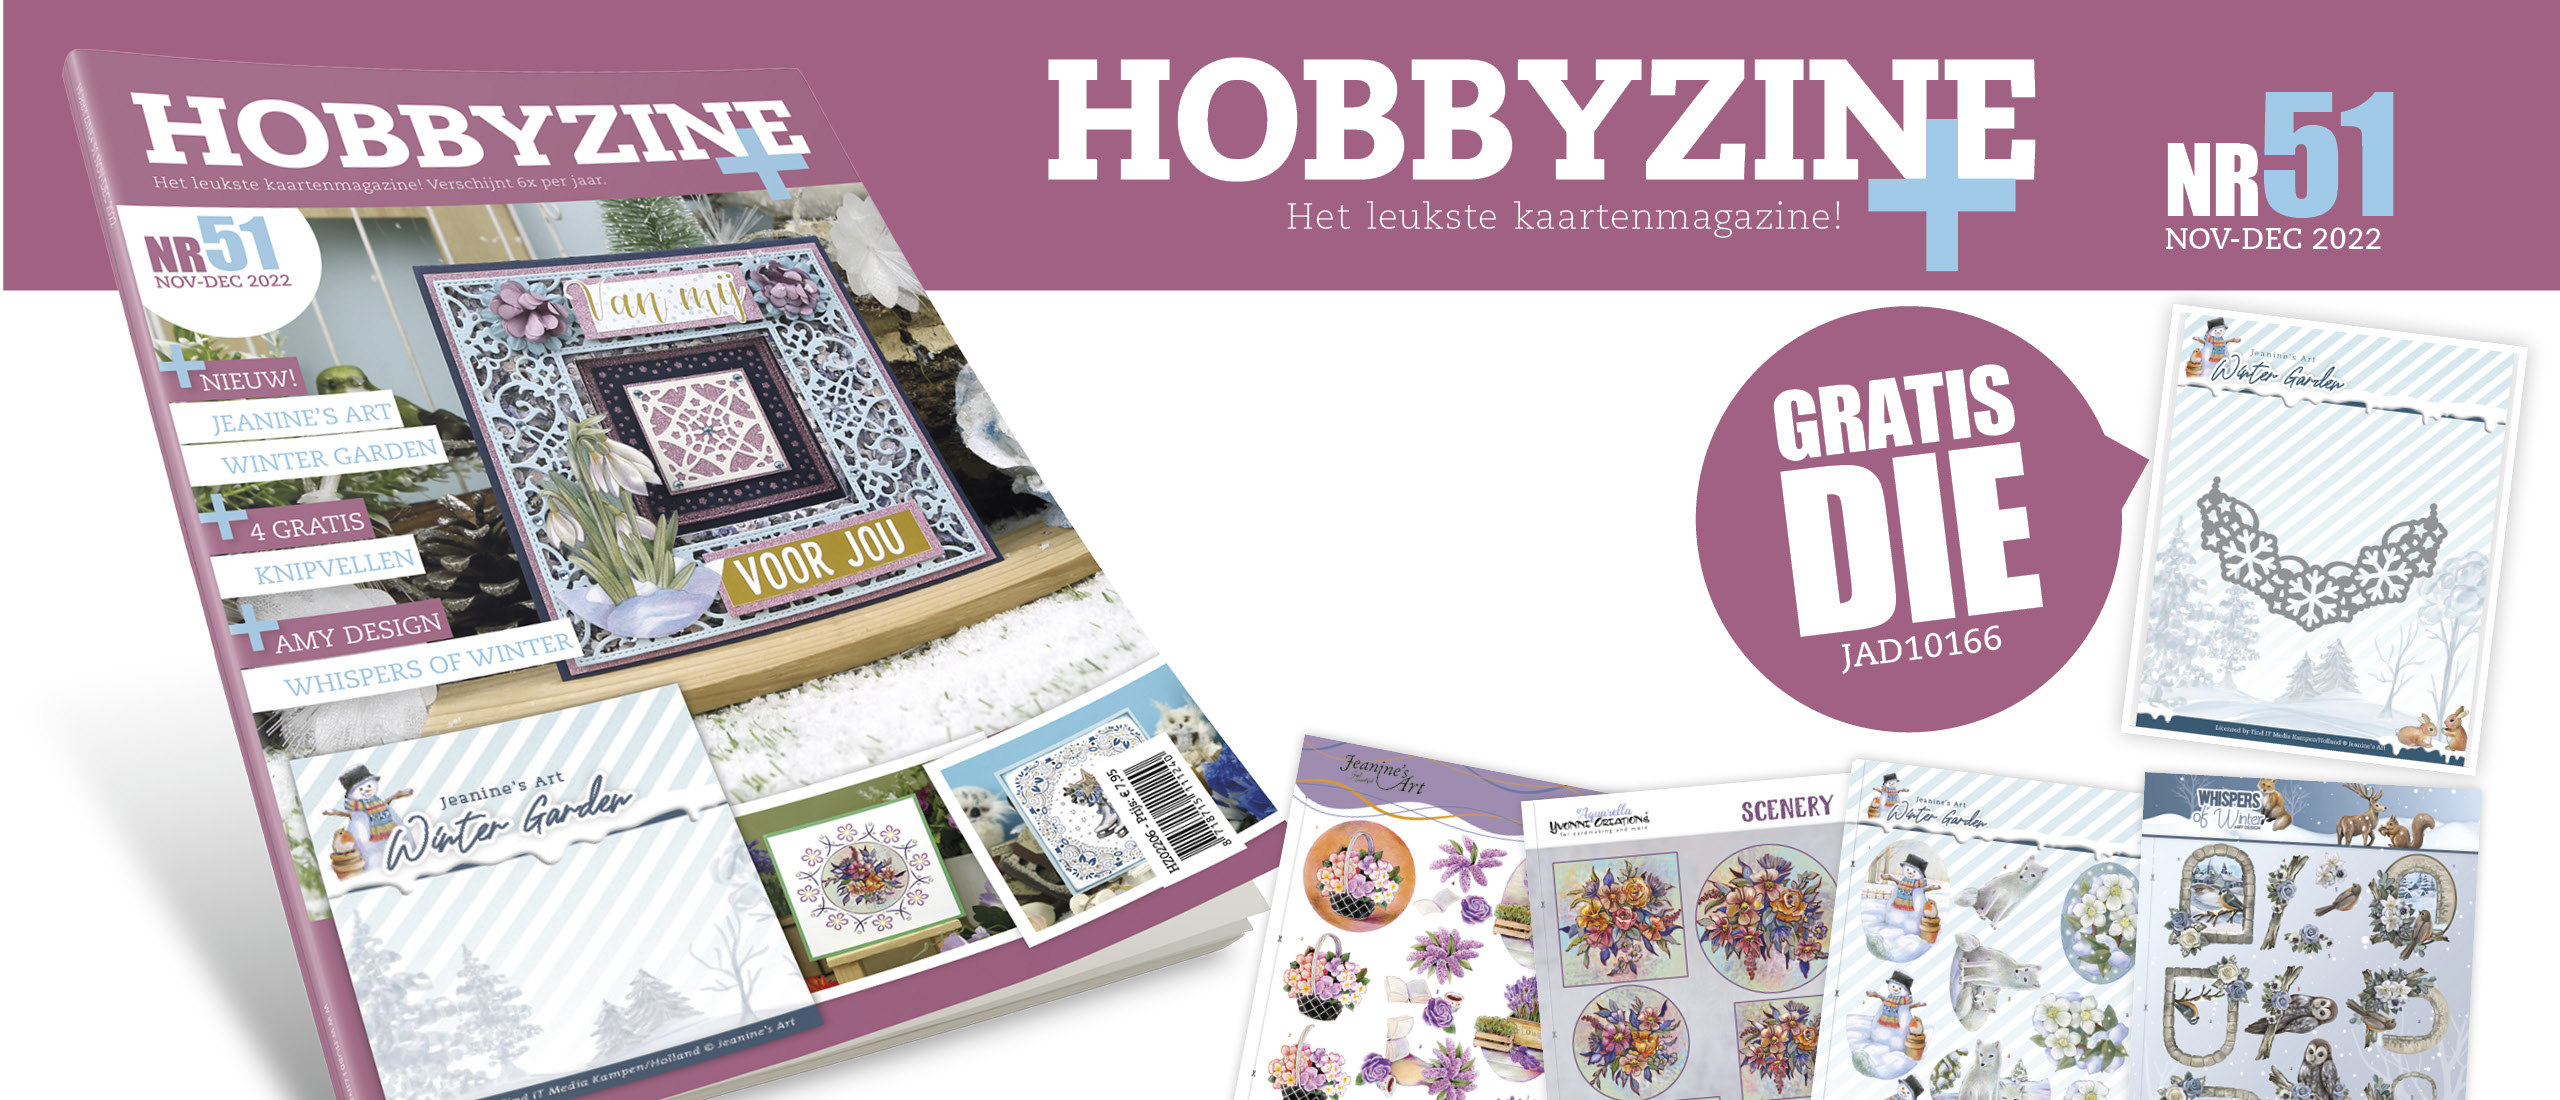 Gratis extra's bij Hobbyzine Plus 51!